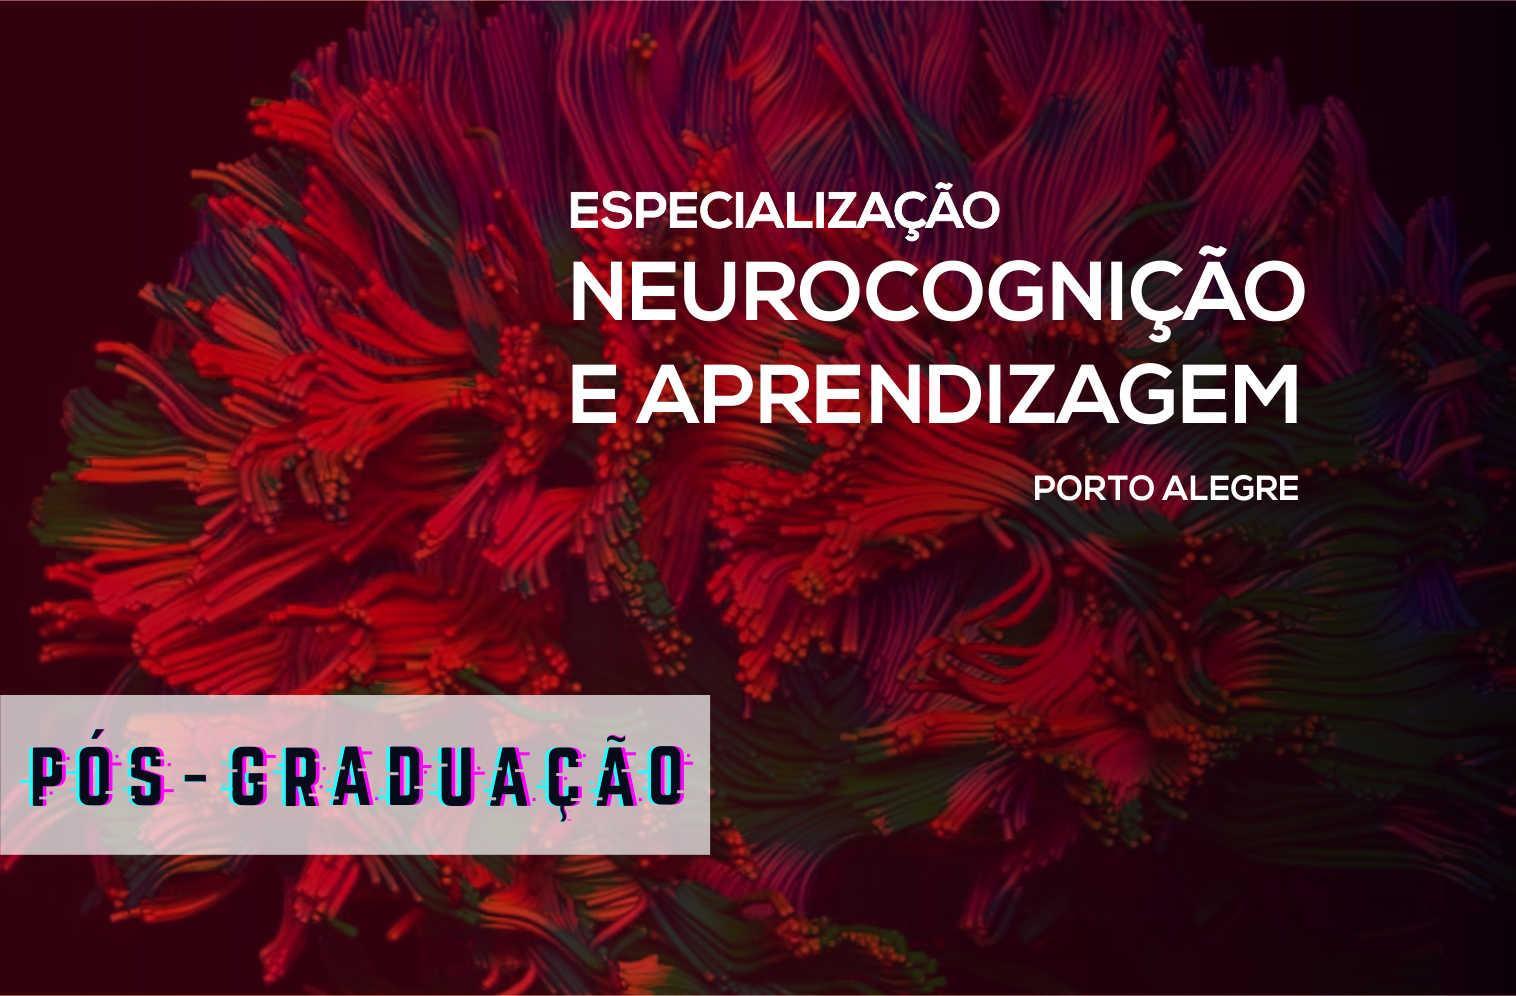 Especialização em Neurocognição e Aprendizagem - Porto Alegre